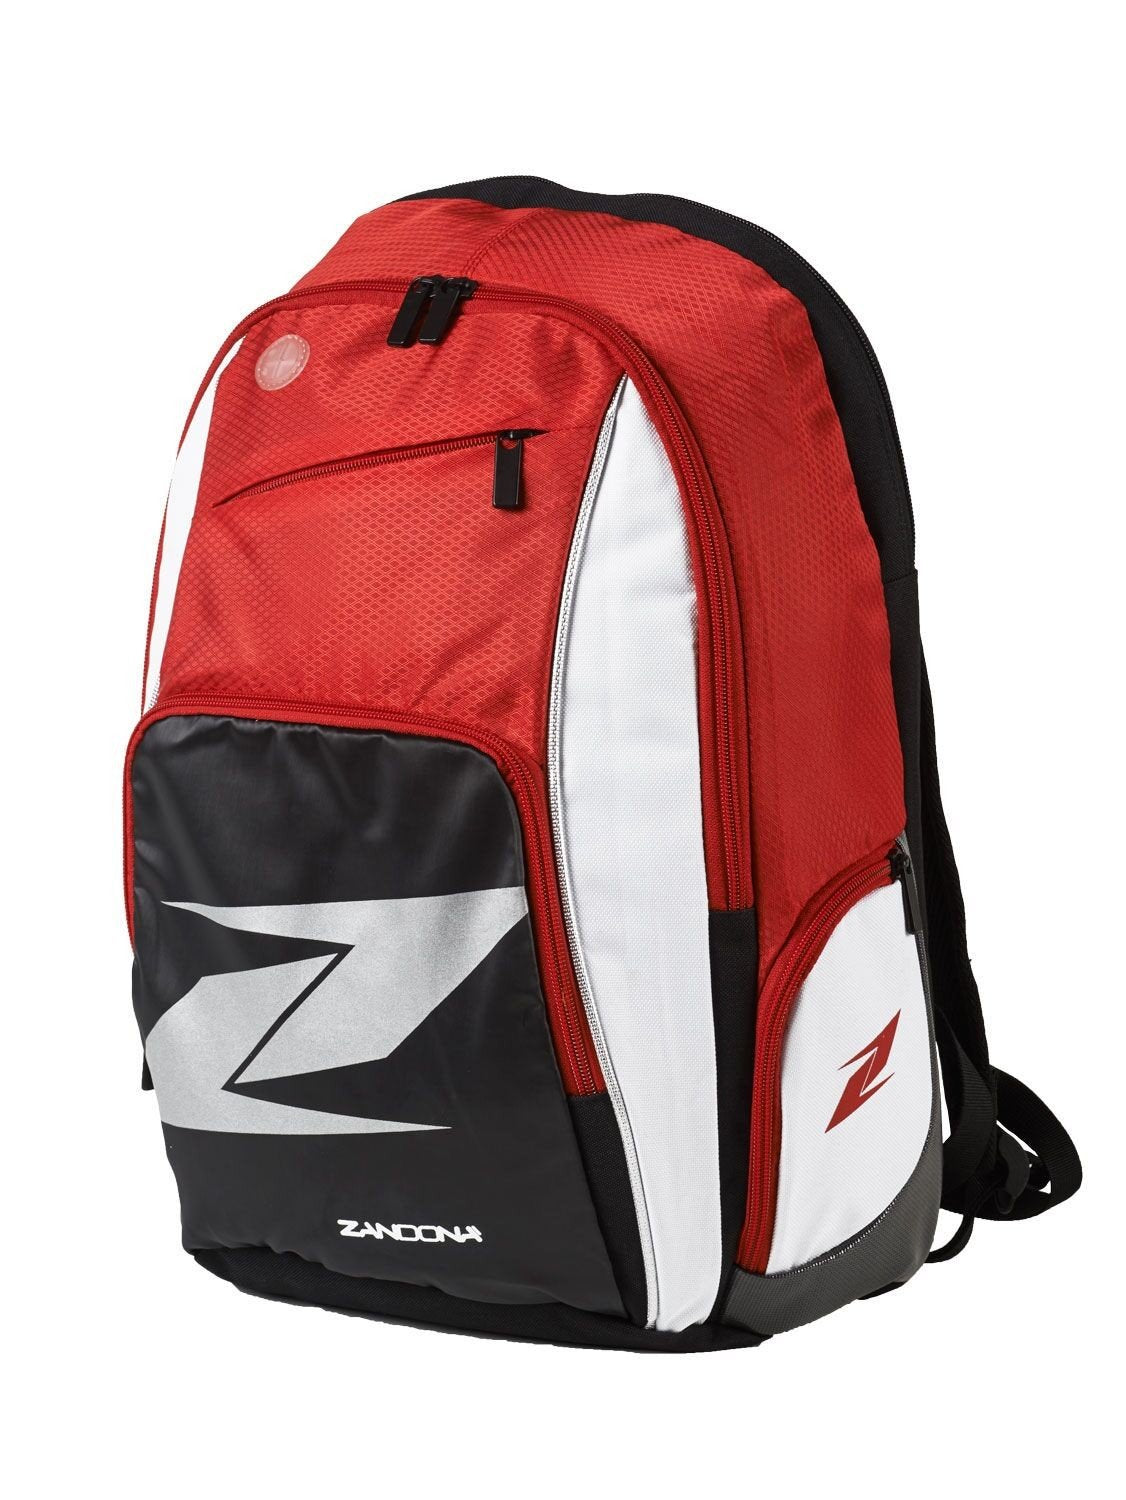 Zandona Backpack